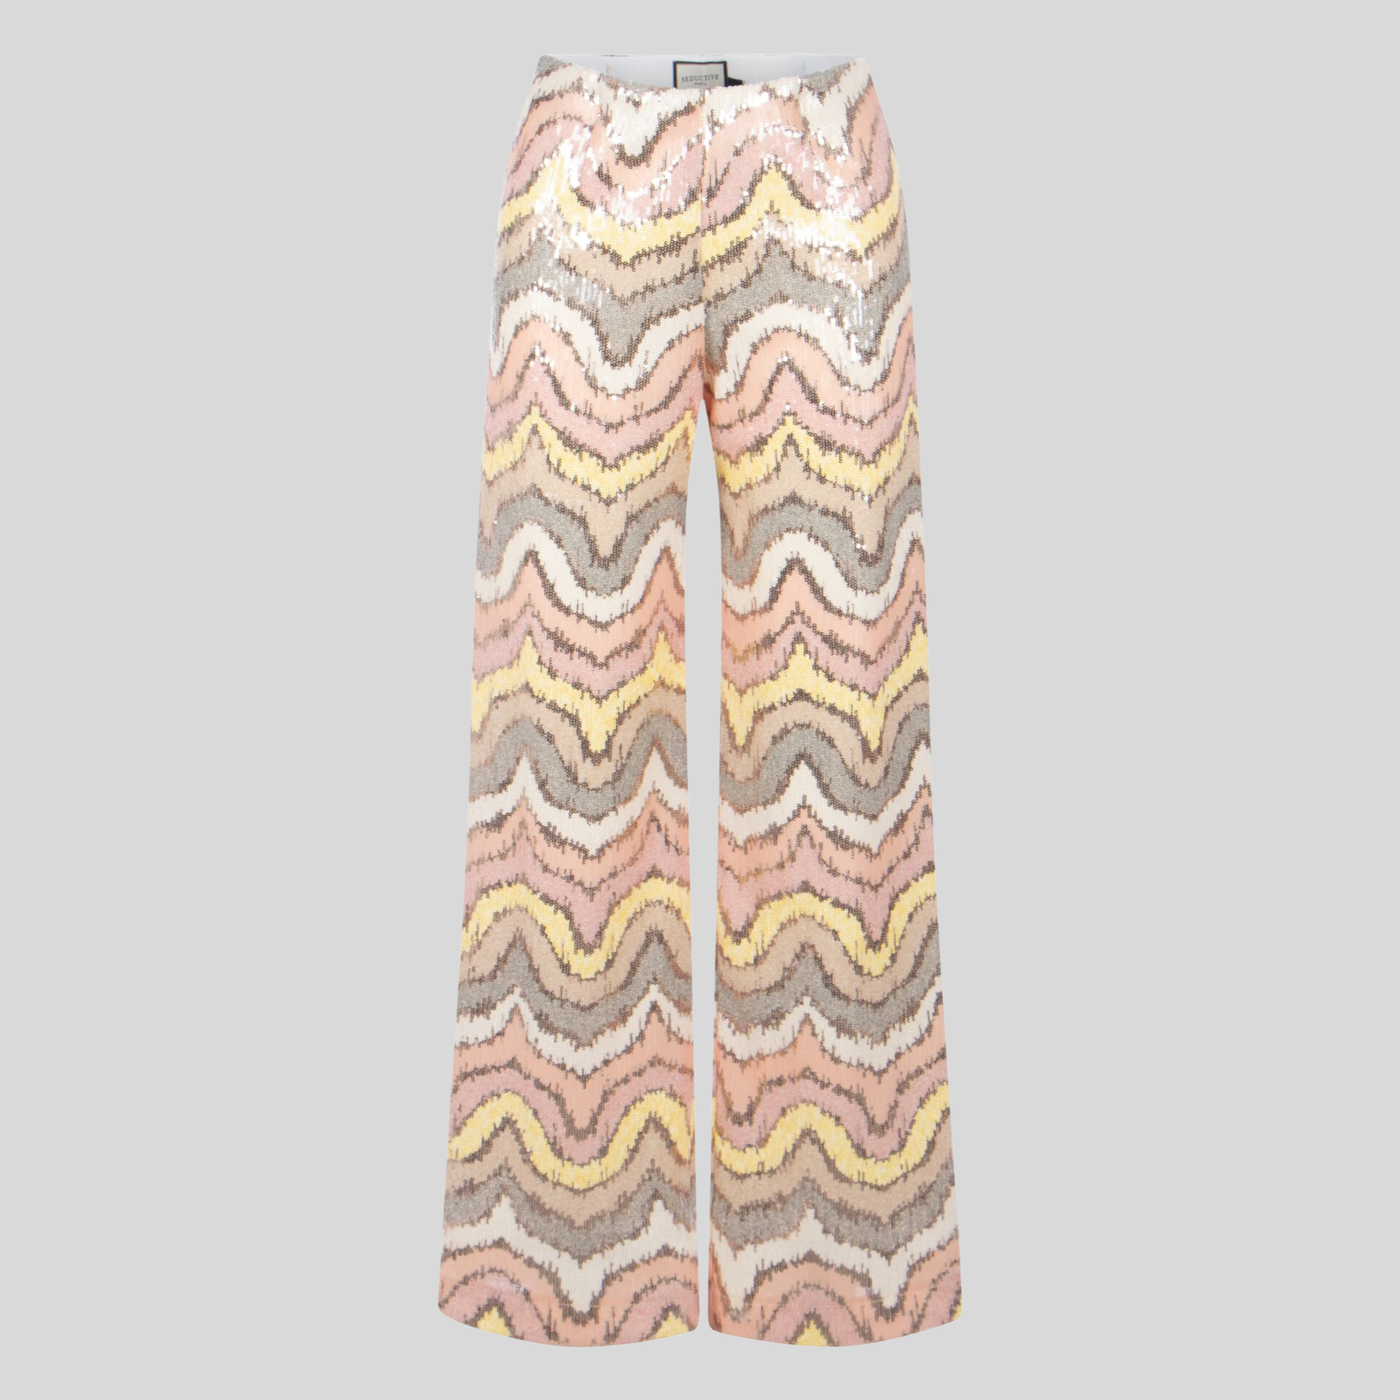 Gotstyle Fashion - Seductive Pants Sequin Wave Pattern Wide Leg Pants - Multi